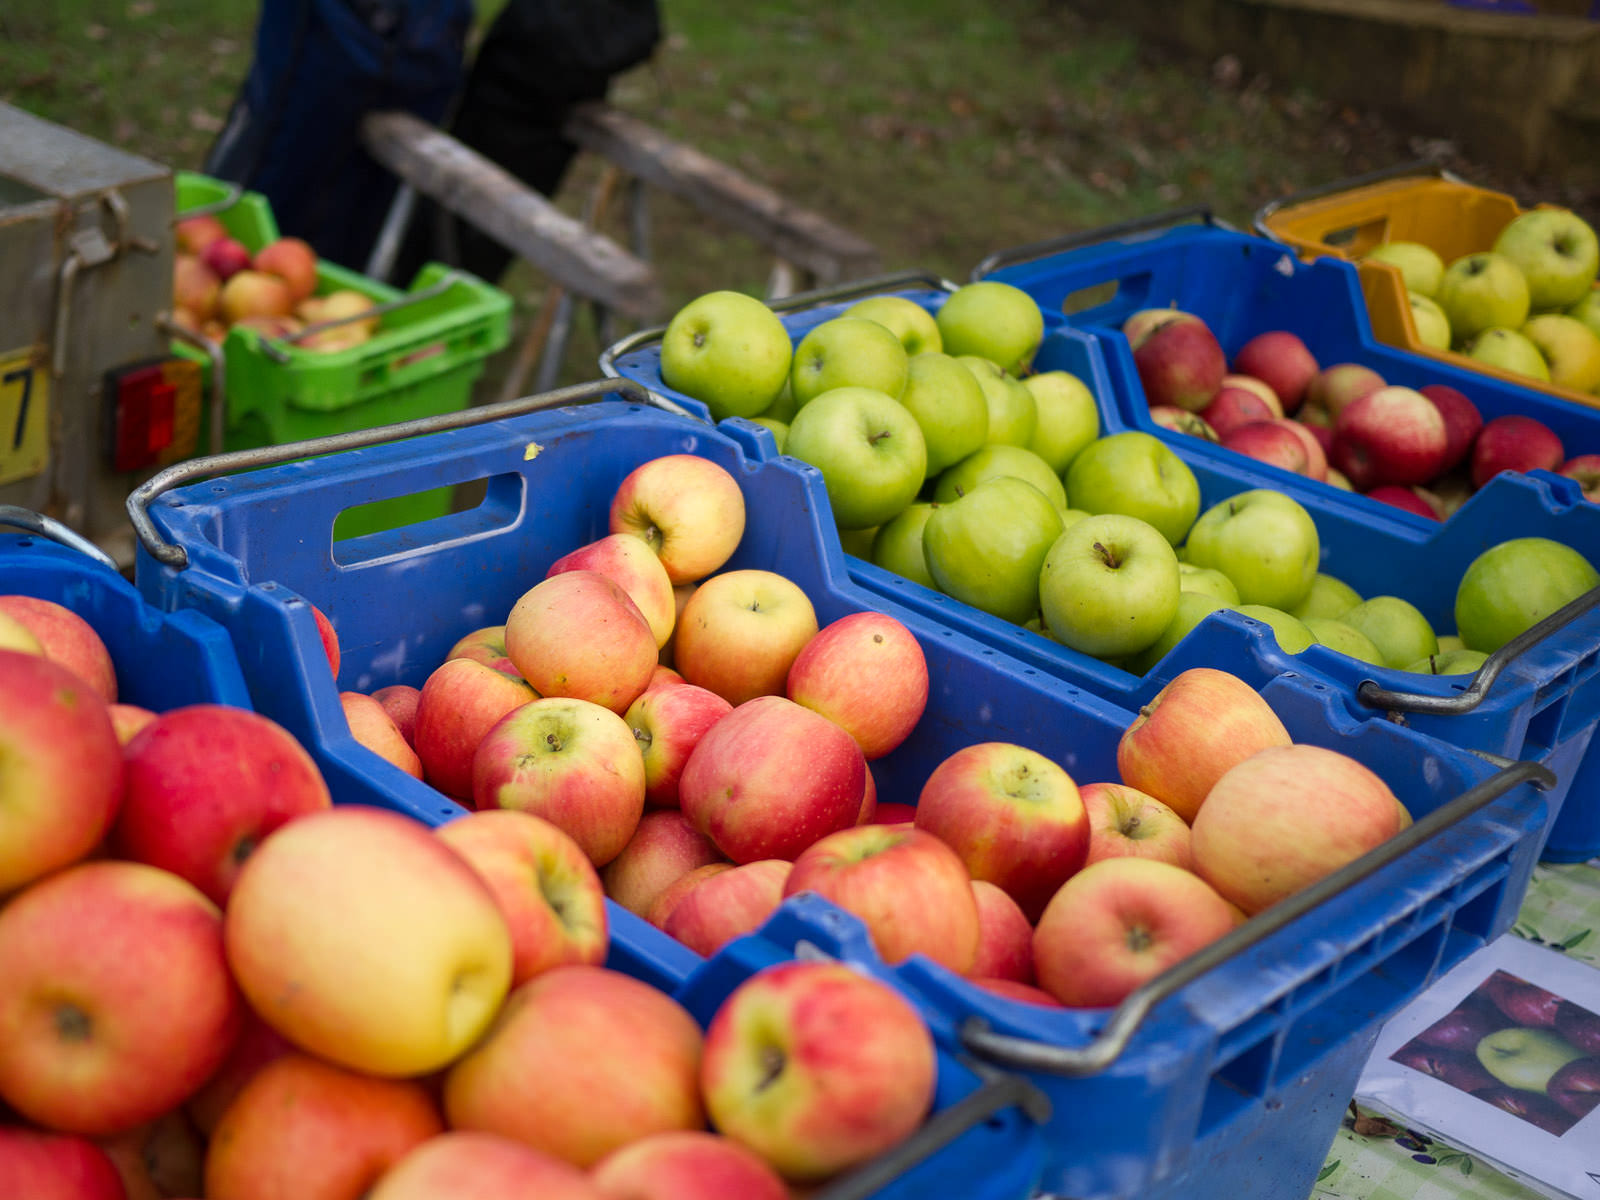 Apples grown in Braeside Orchards in Bridgetown